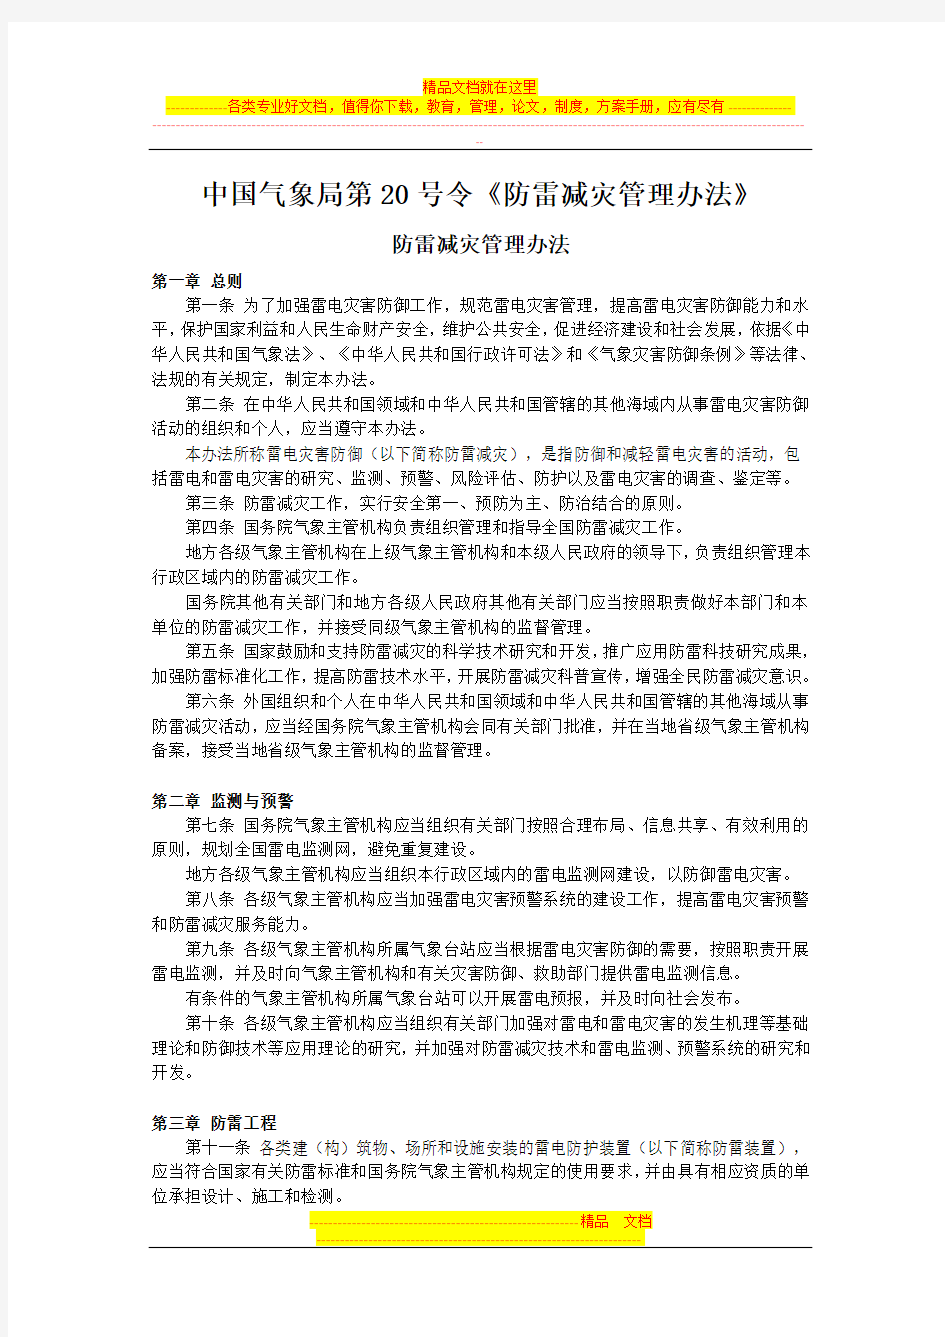 中国气象局第20号令《防雷减灾管理办法》